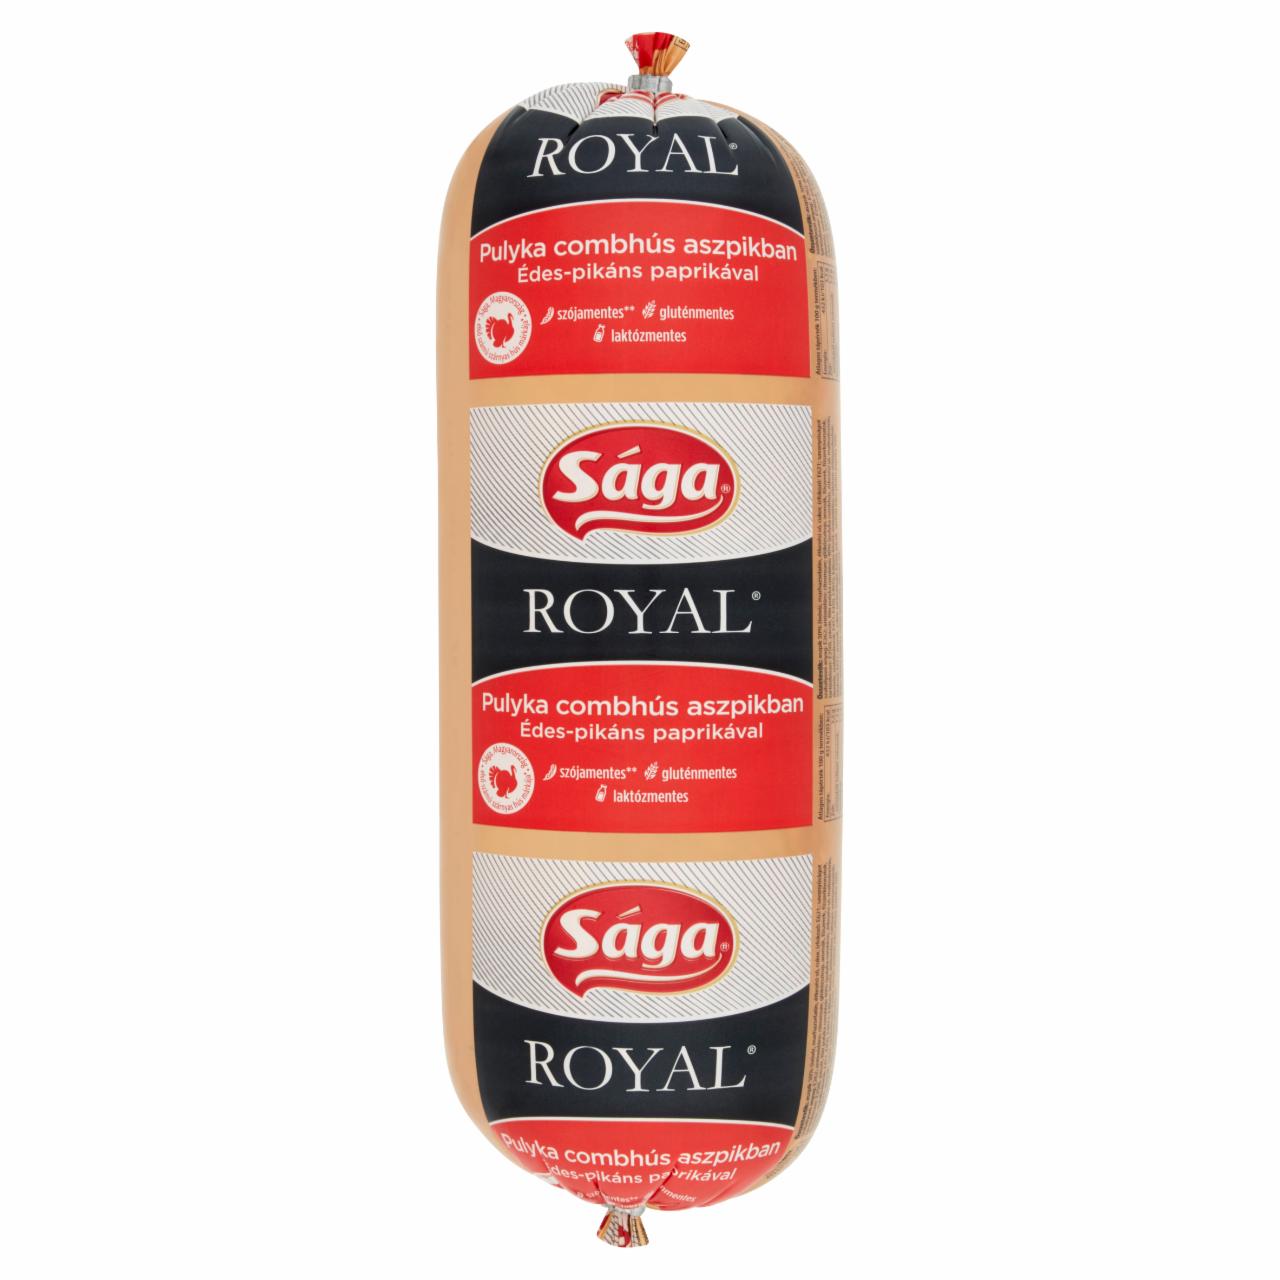 Képek - Saga Royal pulyka combhús aszpikban édes-pikáns paprikával 2000 g